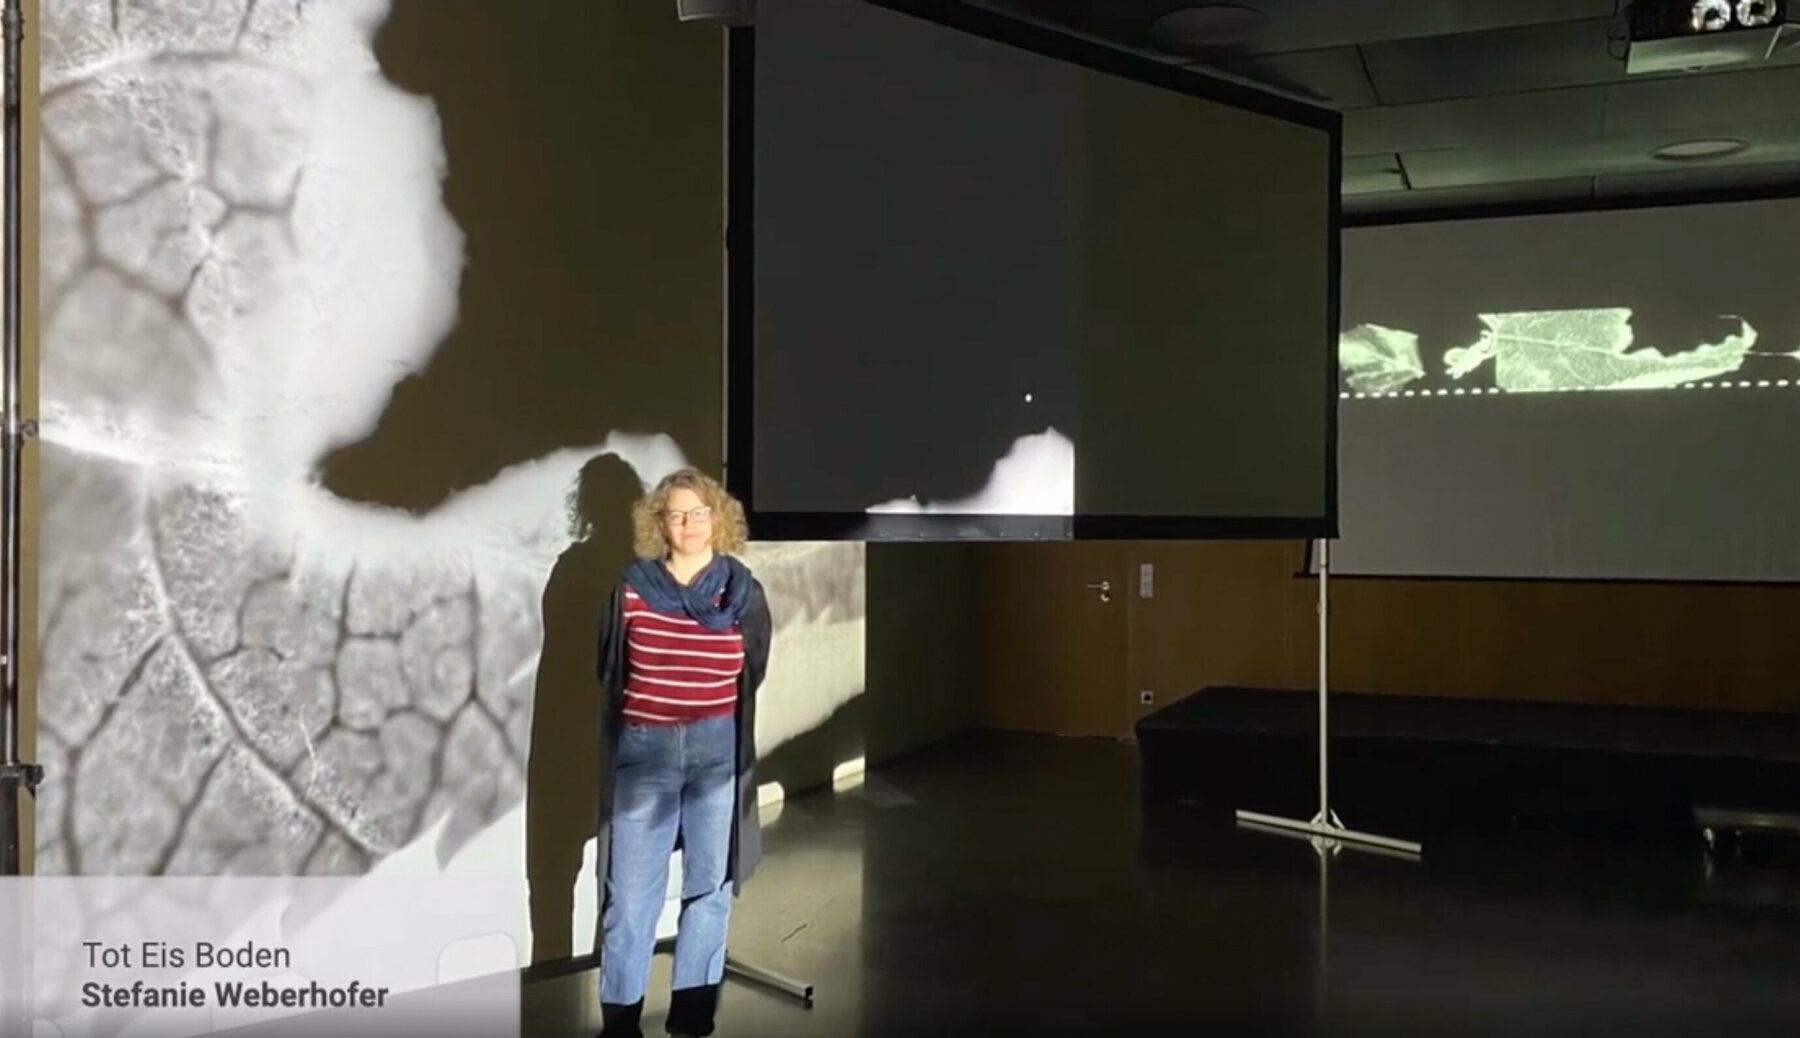 Videostill, Stefanie Weberhofer vor einer großen Leinwand mit Projektion